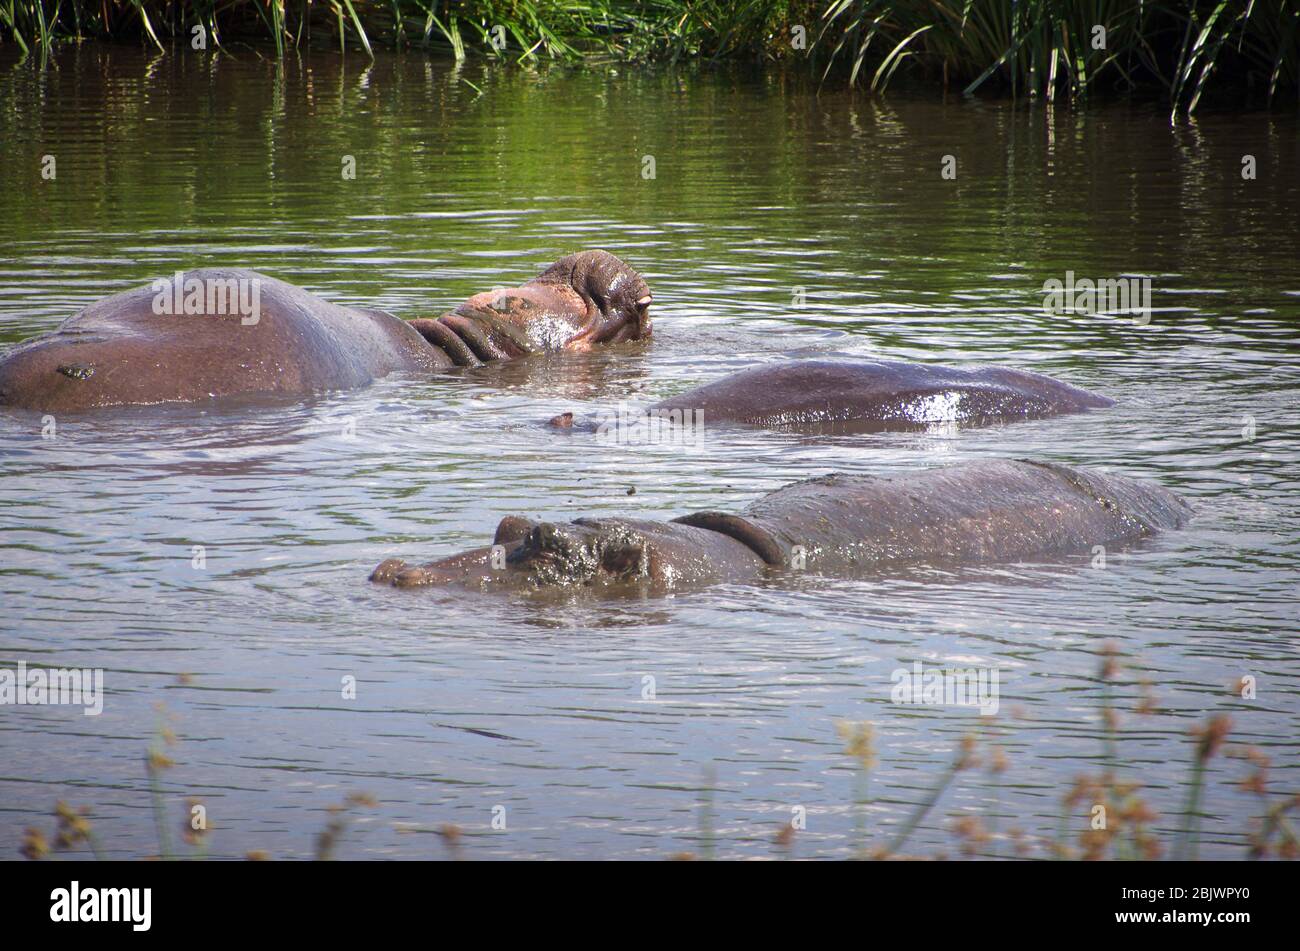 Hippopotamus in the Ngorongoro crater in Tanzania Stock Photo